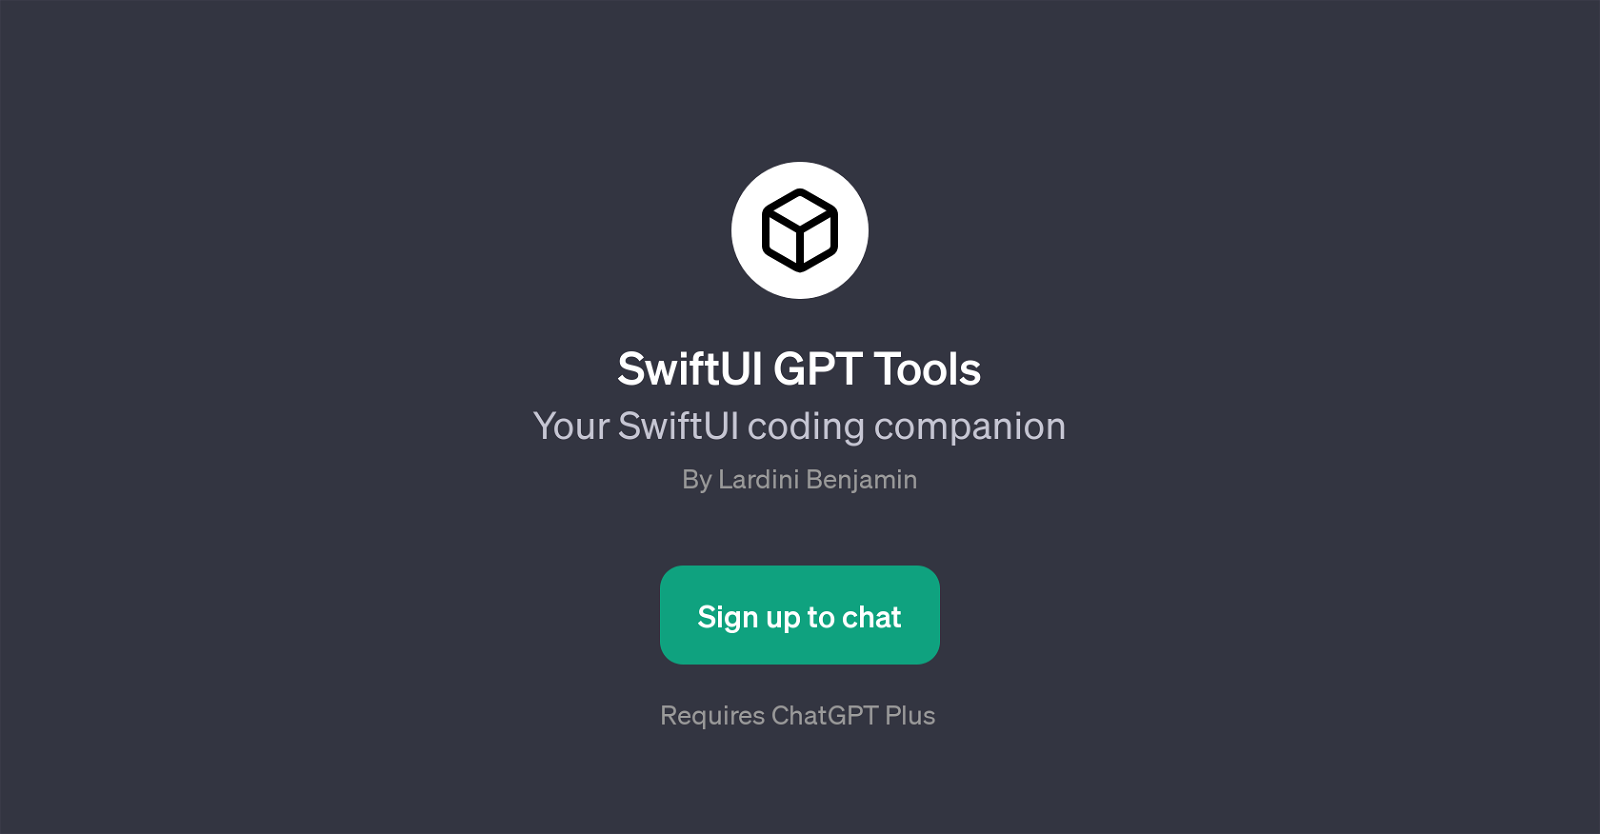 SwiftUI GPT Tools website